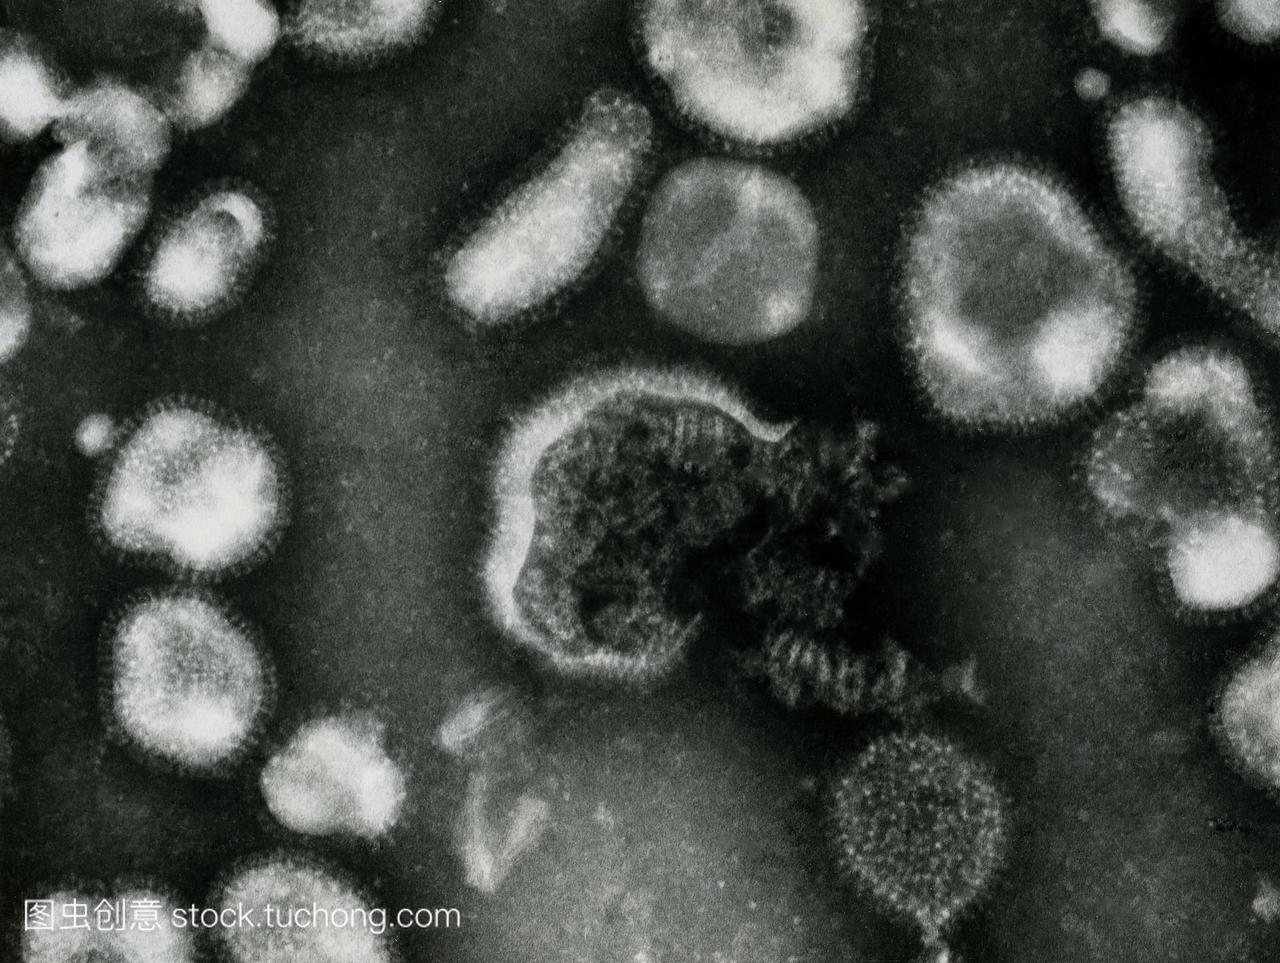 禽流感病毒。透射电子显微照片的禽流感病毒。